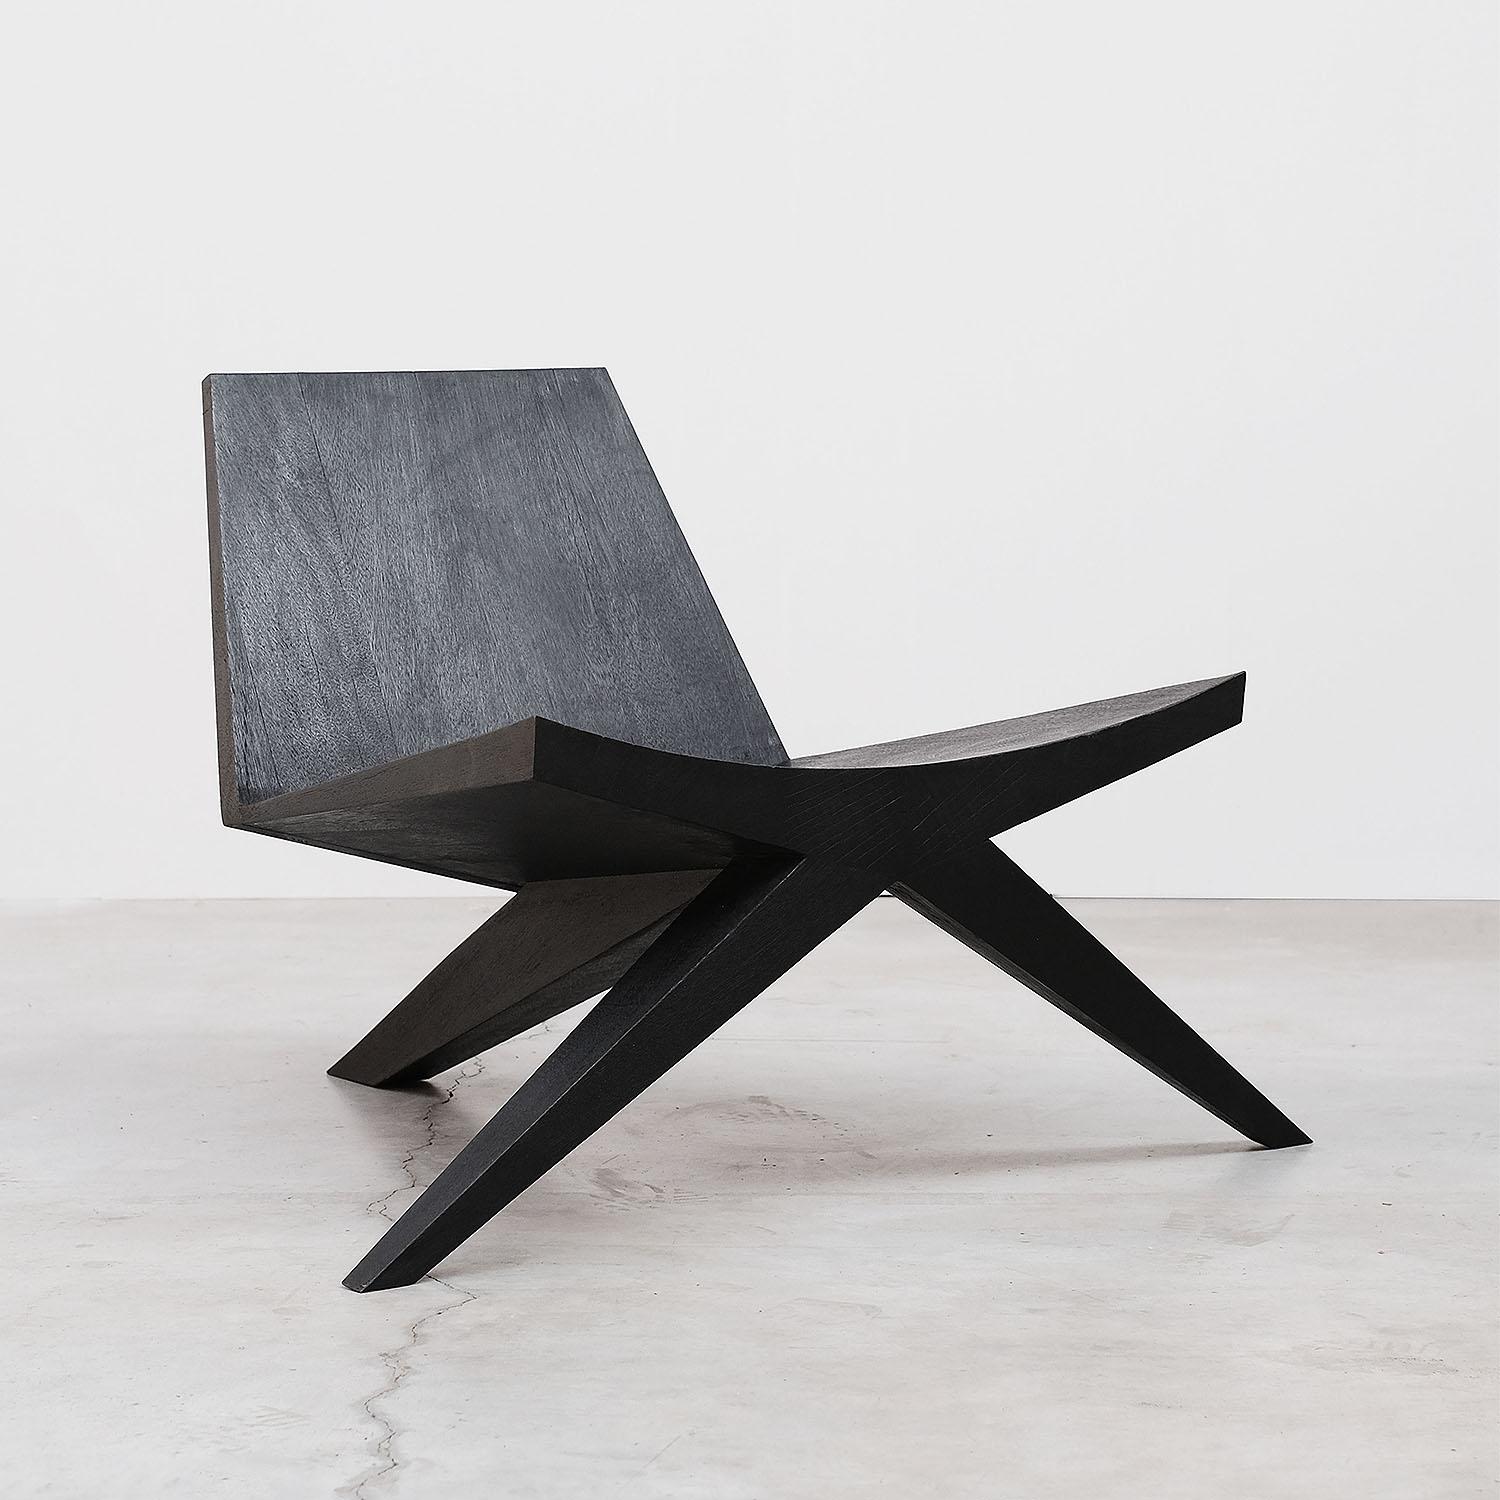 Moderner Loungesessel aus Iroko-Holz-V-Easy men chair von Arno Declercq

MATERIAL: 
Gebranntes und gewachstes Iroko-Holz.

Abmessungen: 
100 cm B x 90 cm L x 70 cm H
40 